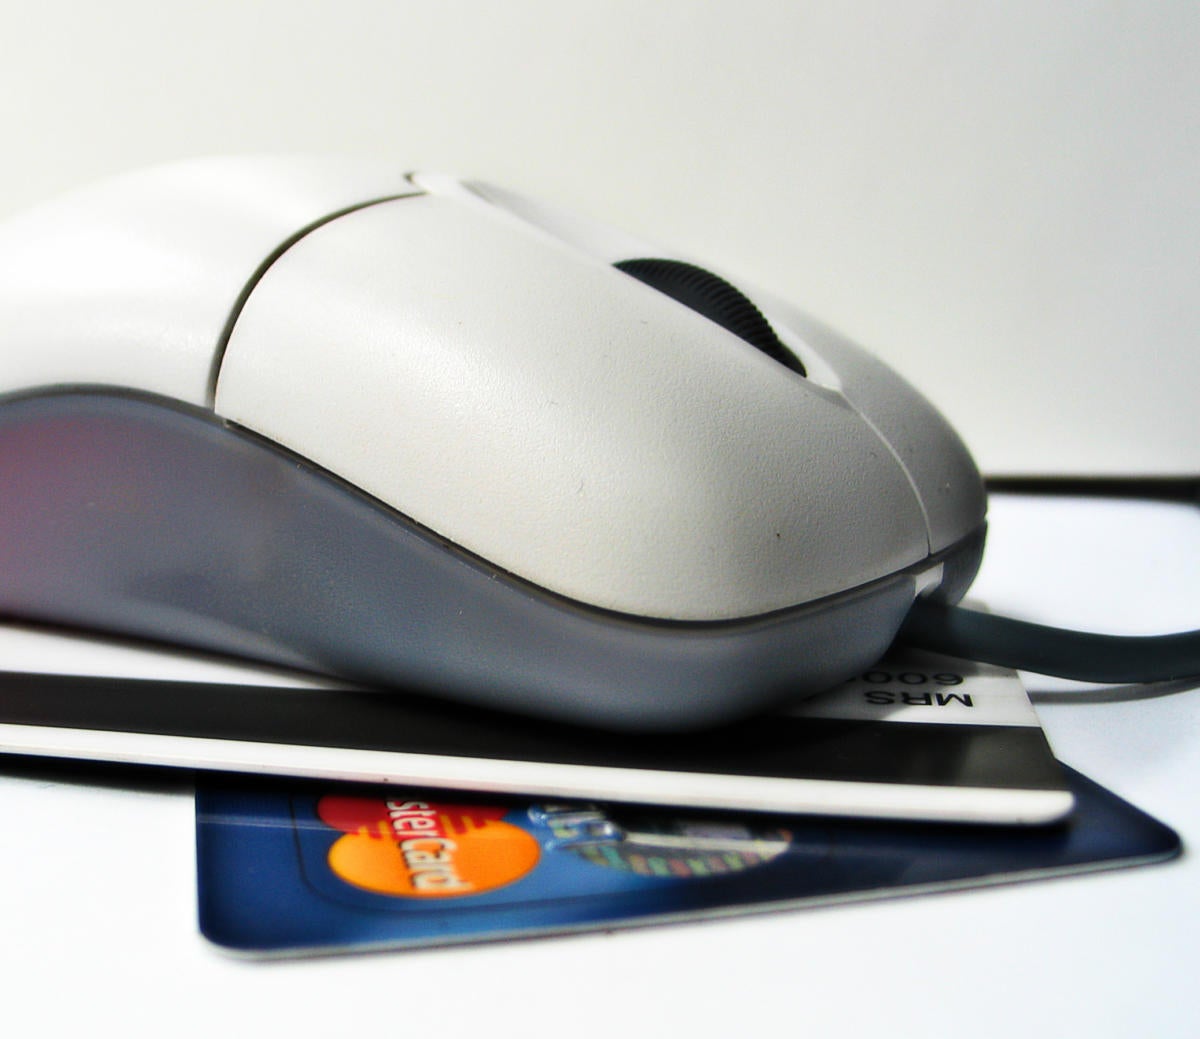 malware payment terminal credit card